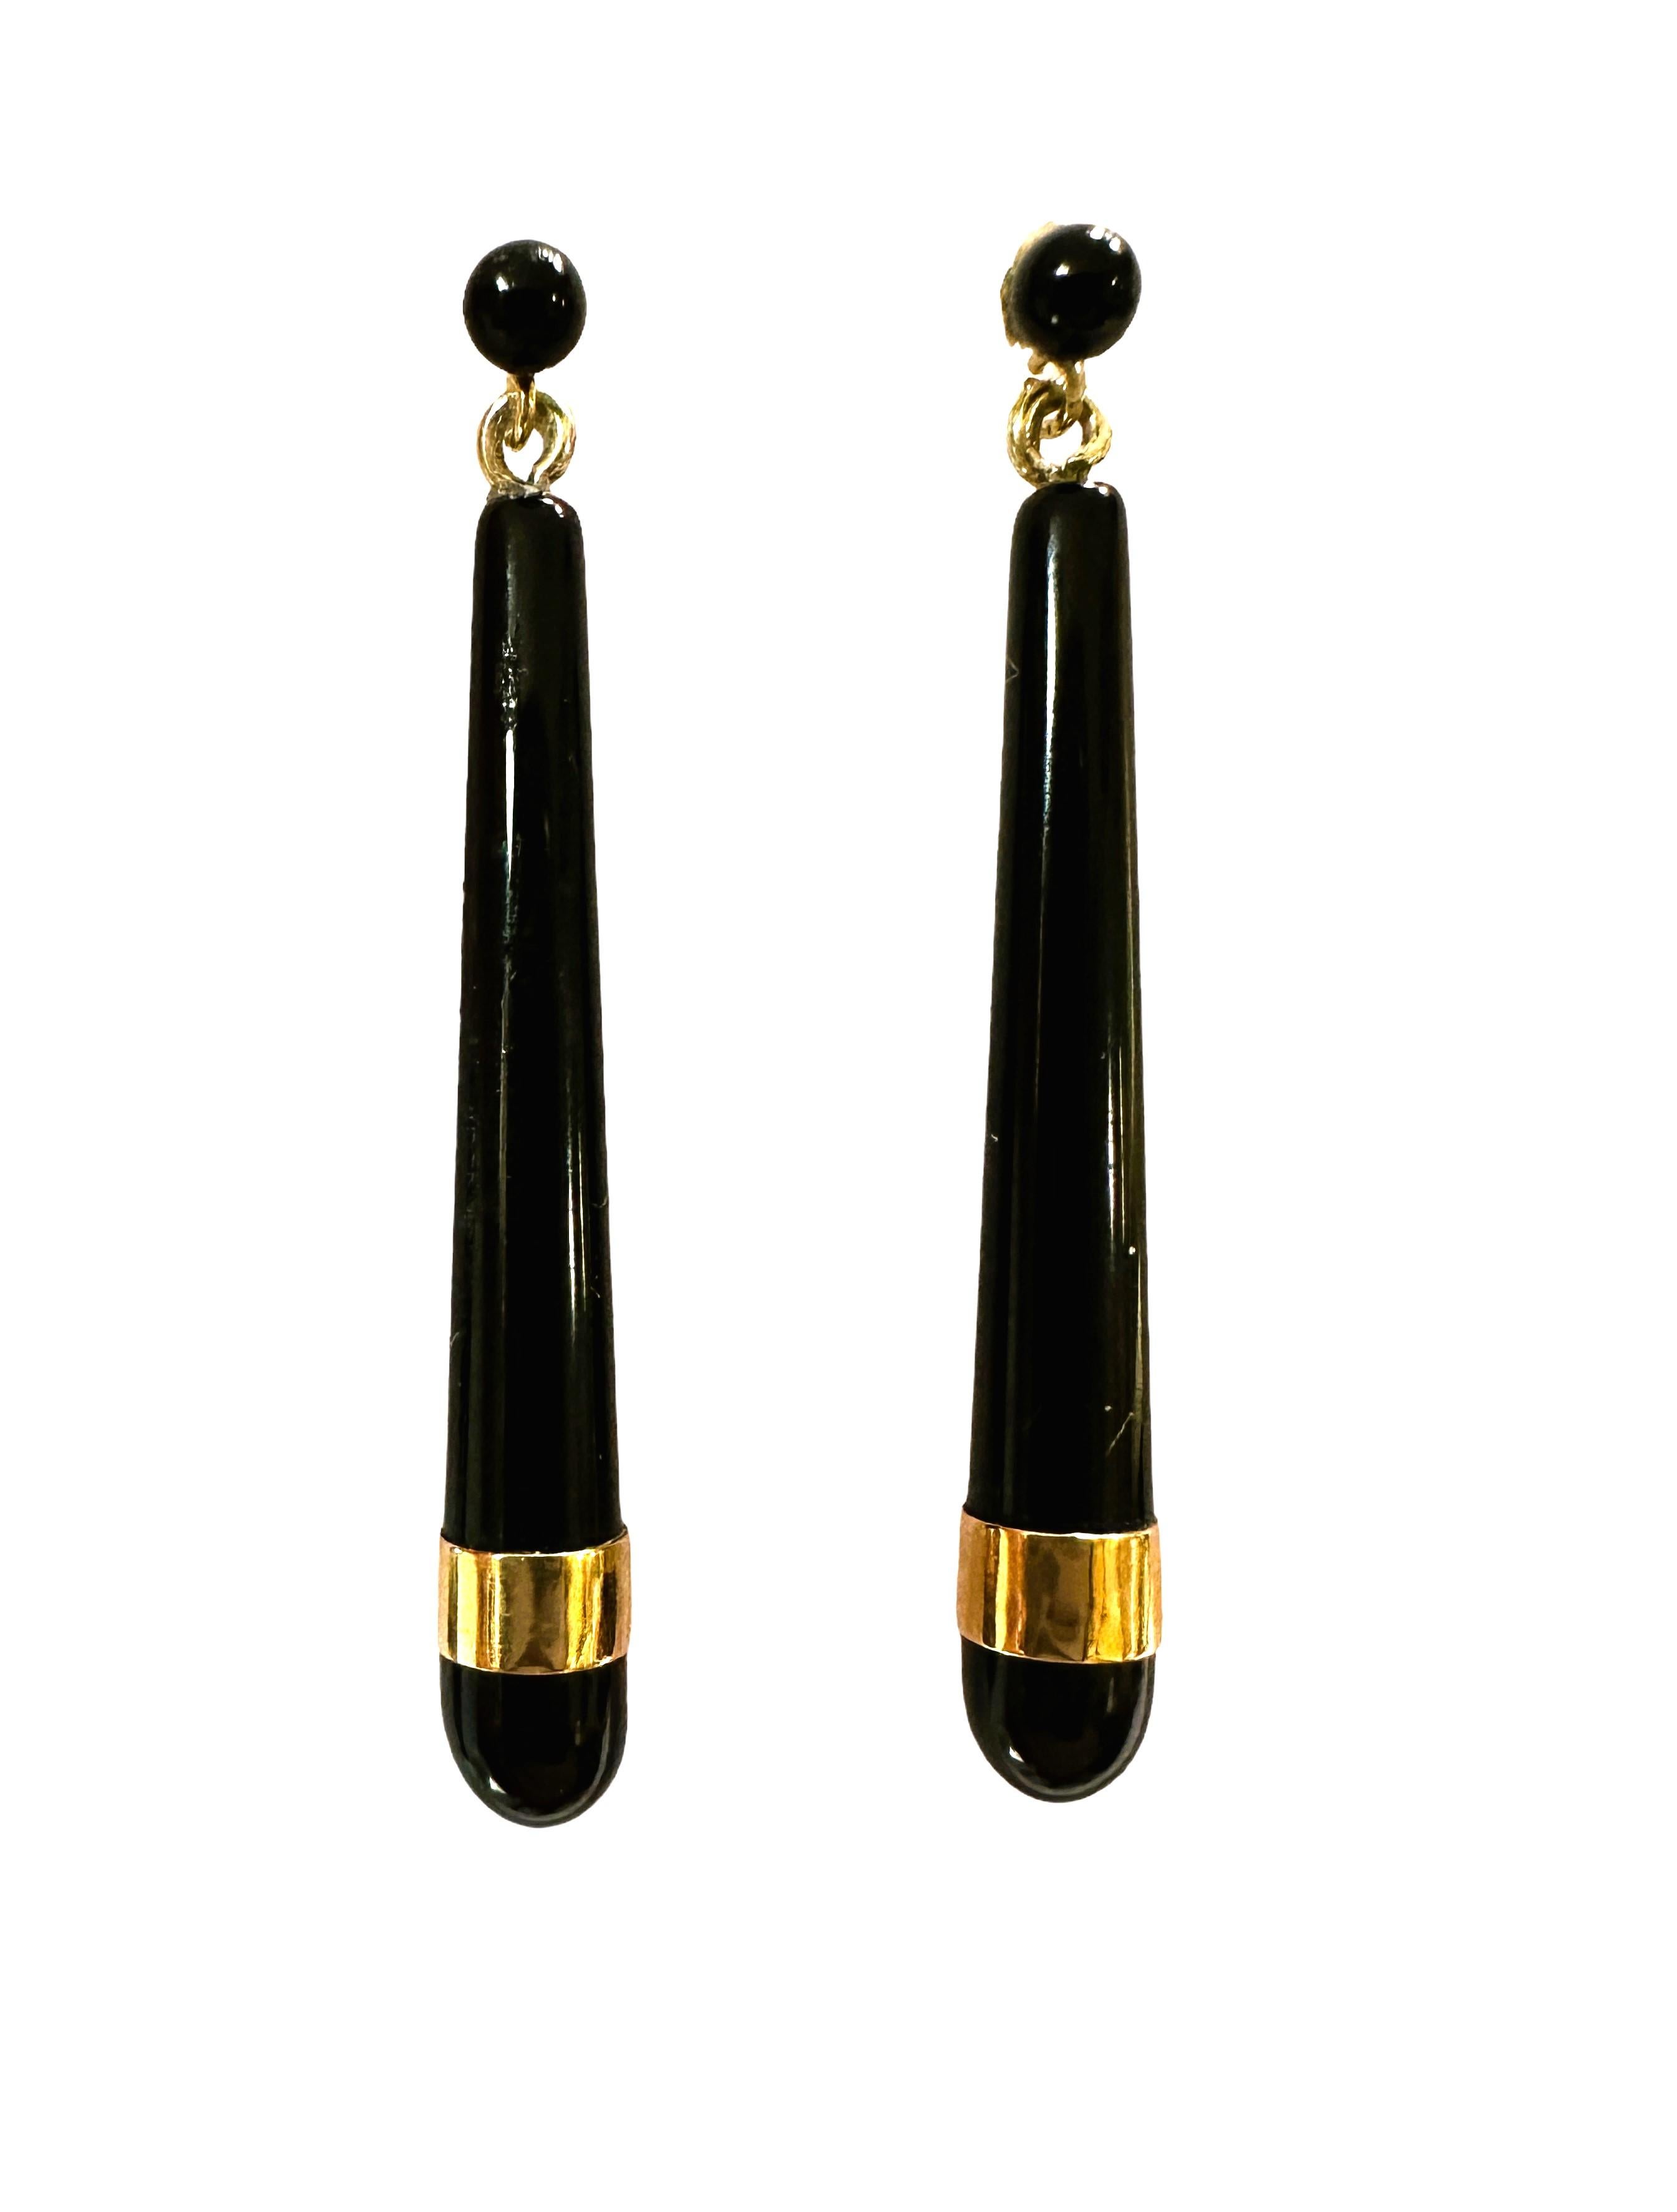 Art Nouveau 10k Yellow Gold Black Onyx Long Teardrop Earrings Marked